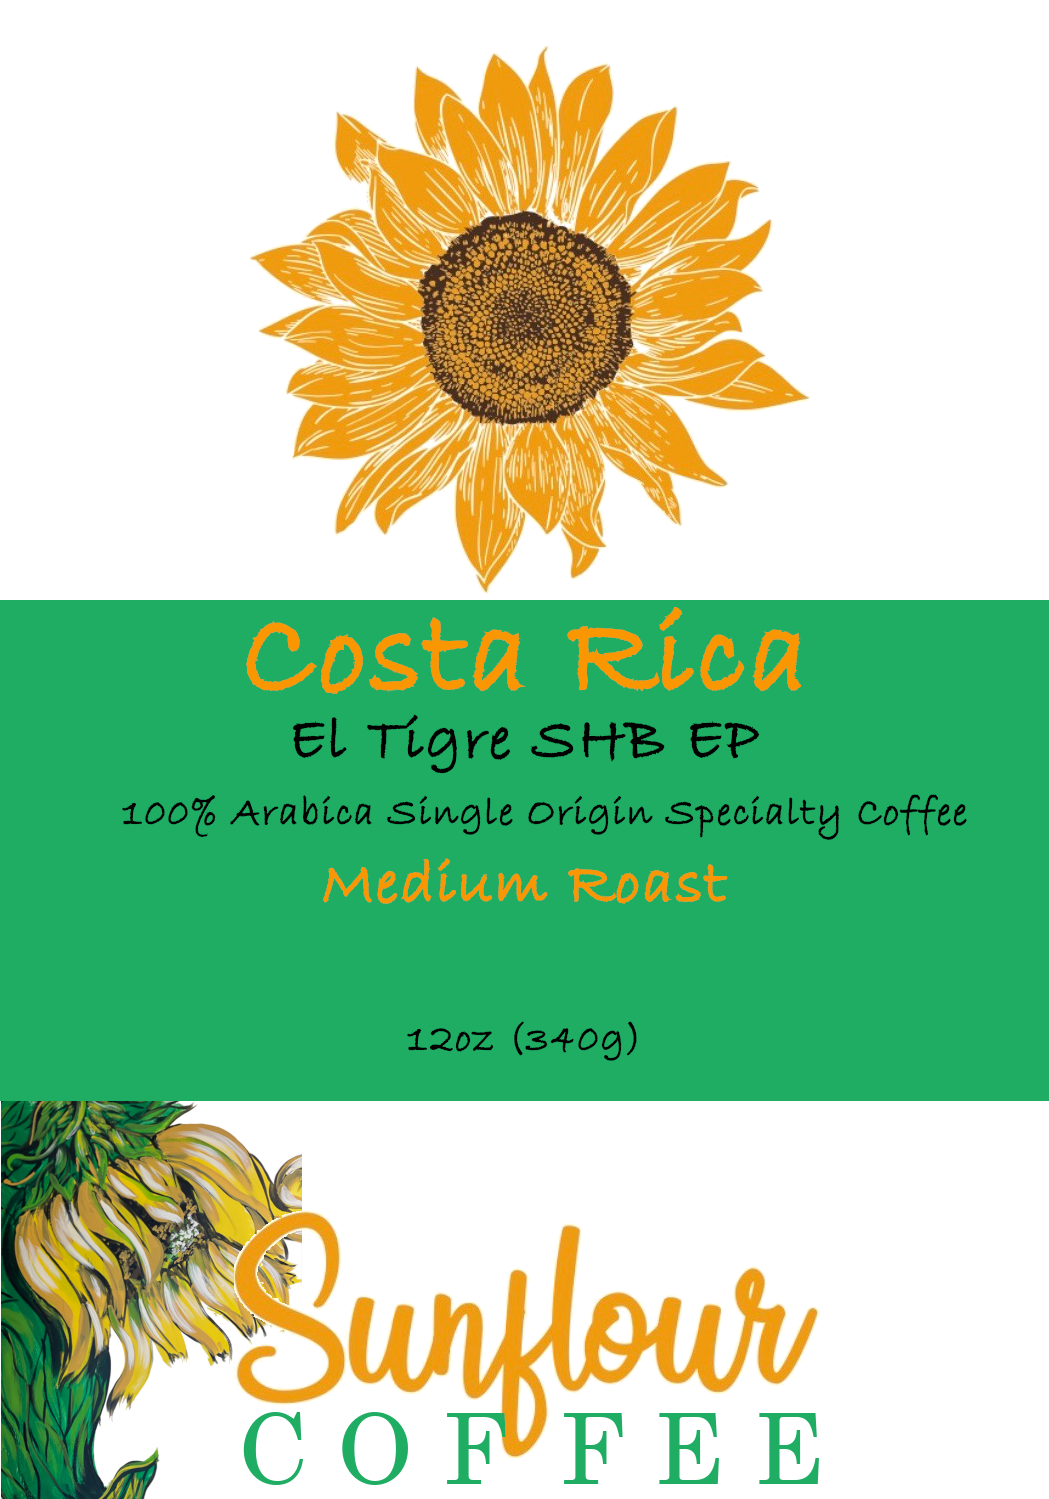 Costa Rica El Tigre SHB EP